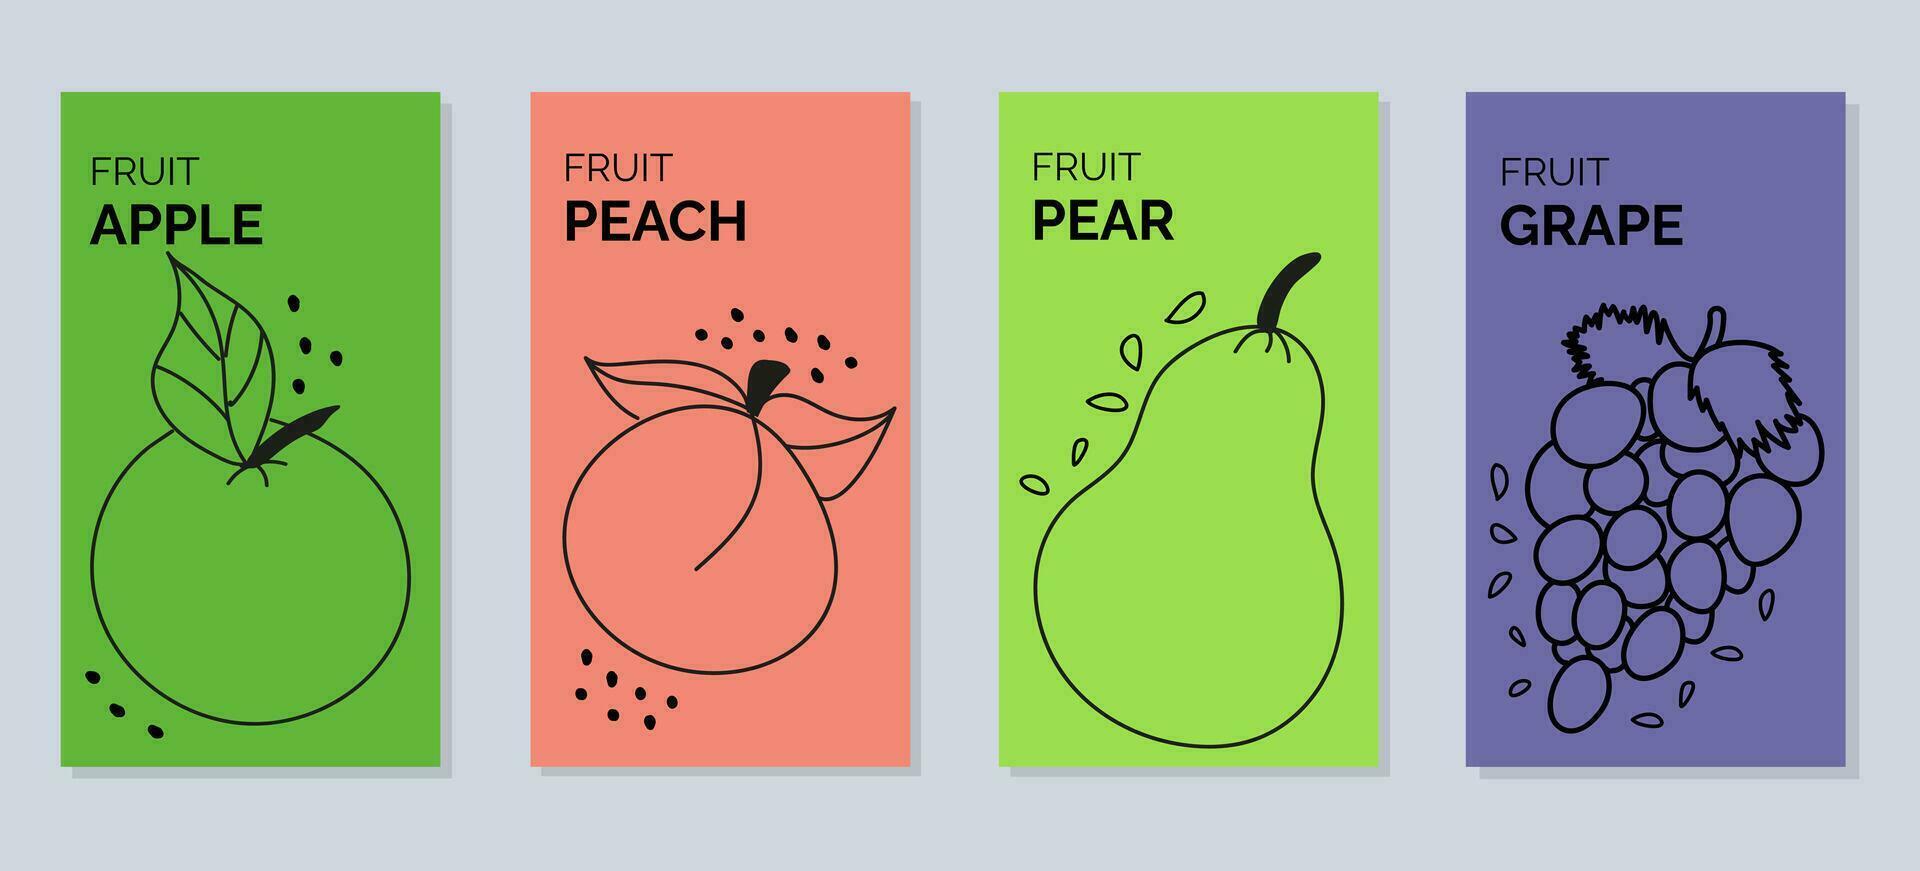 quattro banner con contorno illustrazioni di frutta - Pera, pesca, mela, uva vettore